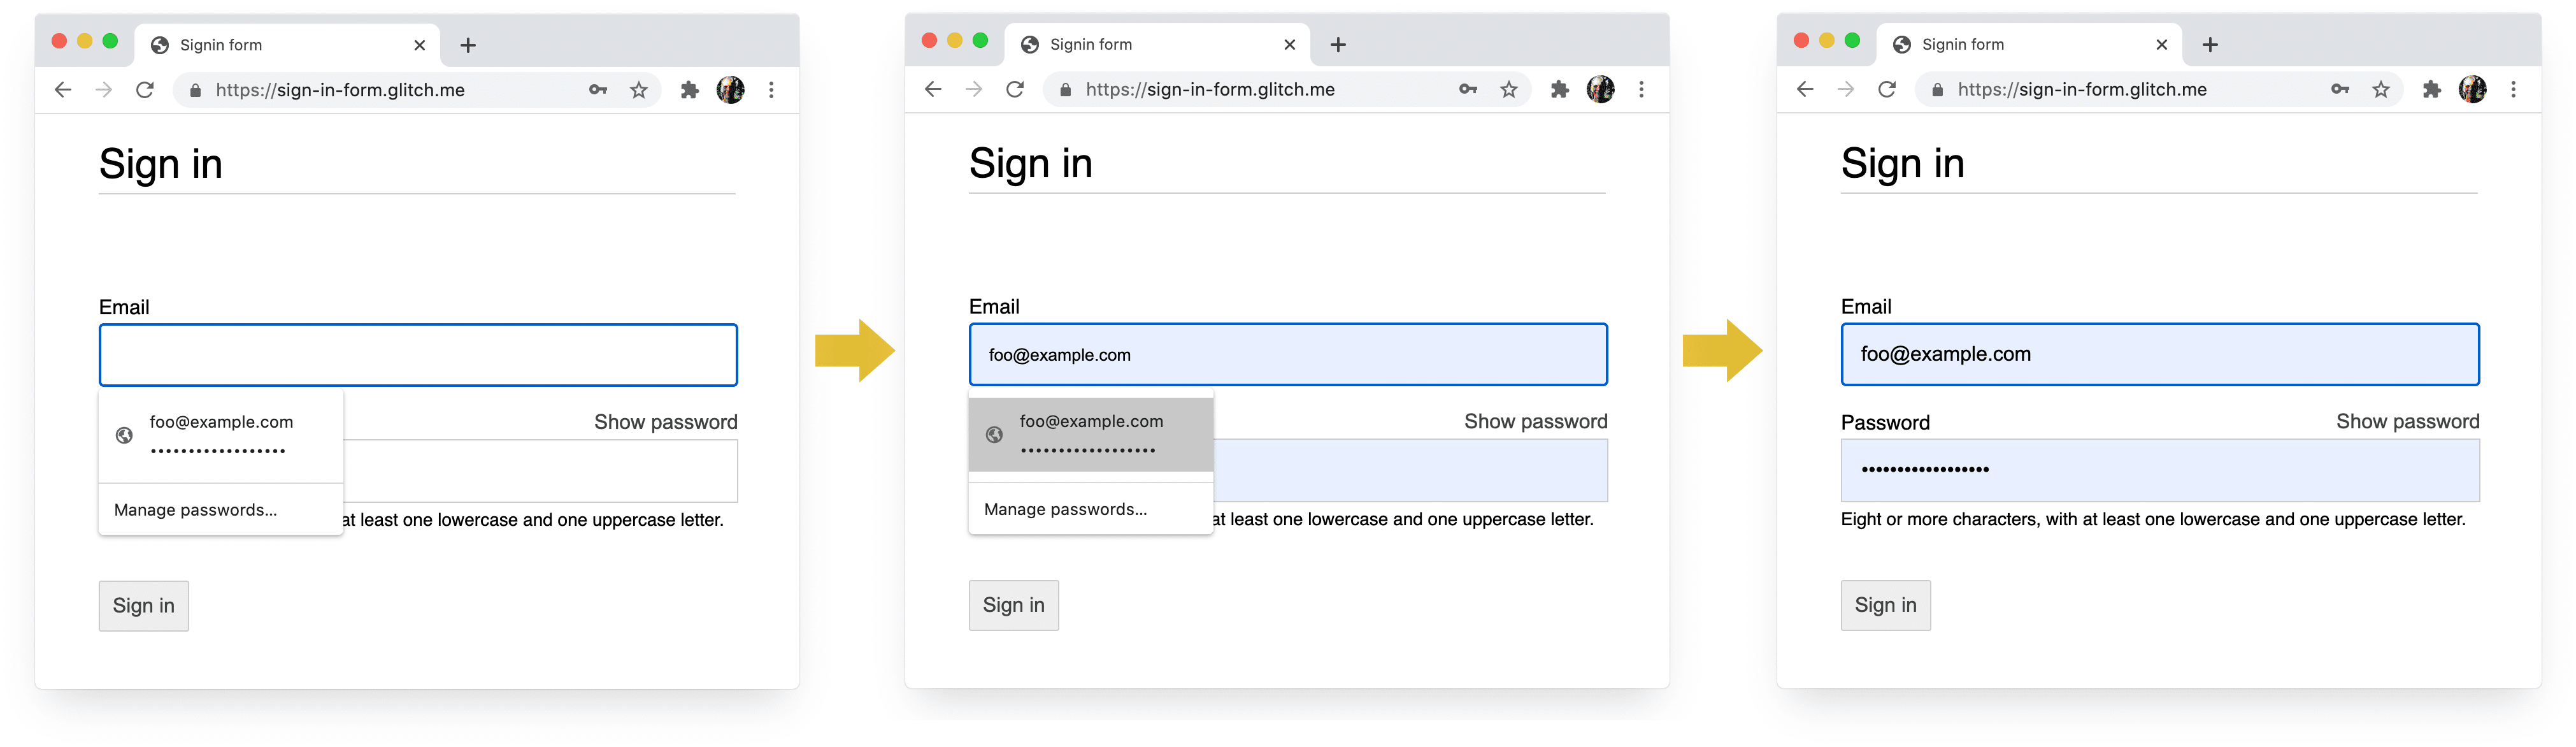 Screenshots der vier Phasen des Anmeldevorgangs in Chrome auf dem Computer: Vervollständigung der E-Mail-Adresse, E-Mail-Vorschlag, Passwortmanager, automatisches Ausfüllen bei Auswahl.